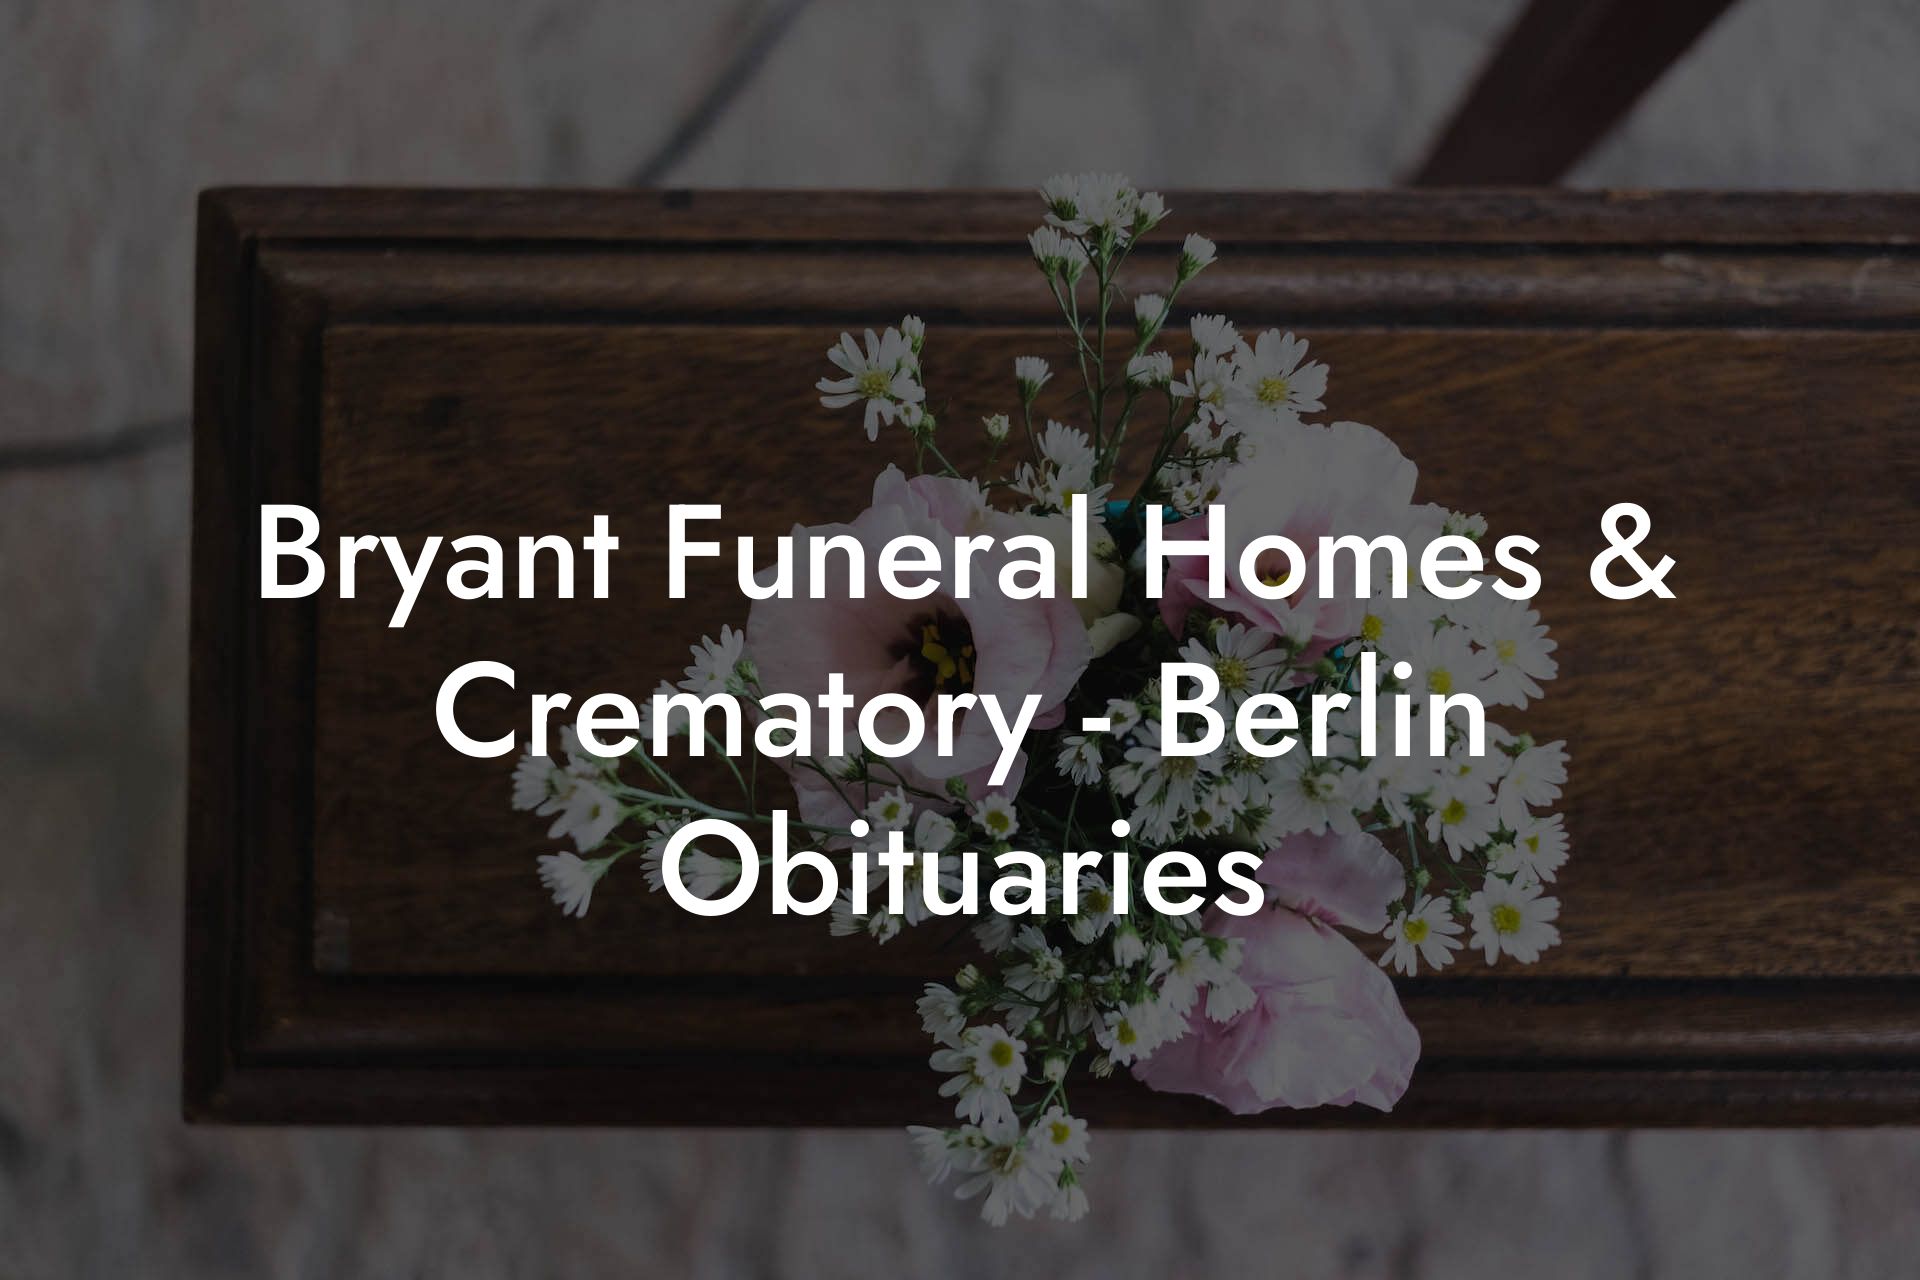 Bryant Funeral Homes & Crematory - Berlin Obituaries